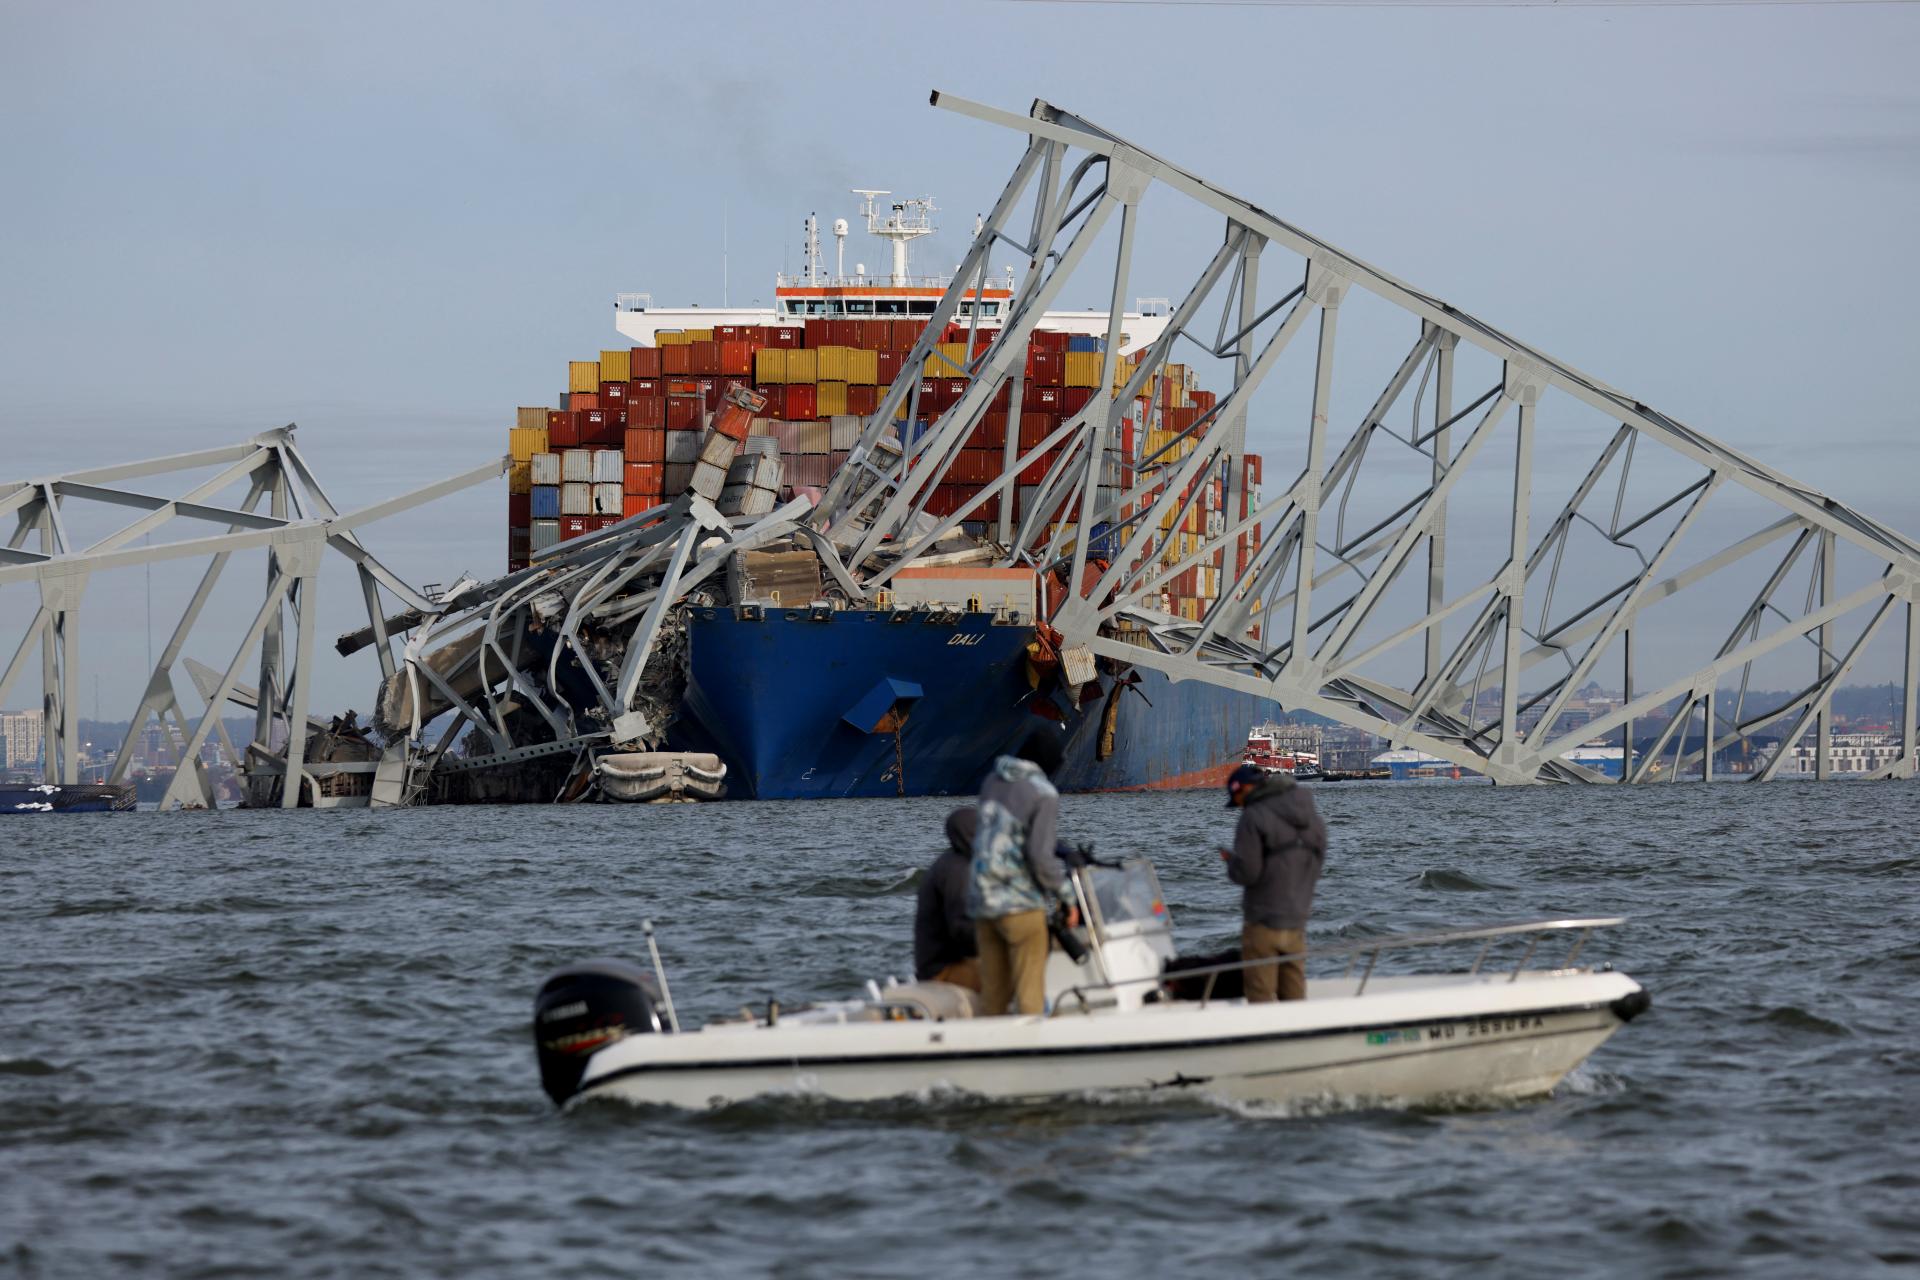 Loď, ktorá zničila most v Baltimore, stratila pohon. Posádka varovala úrady, nárazu sa však nepodarilo predísť